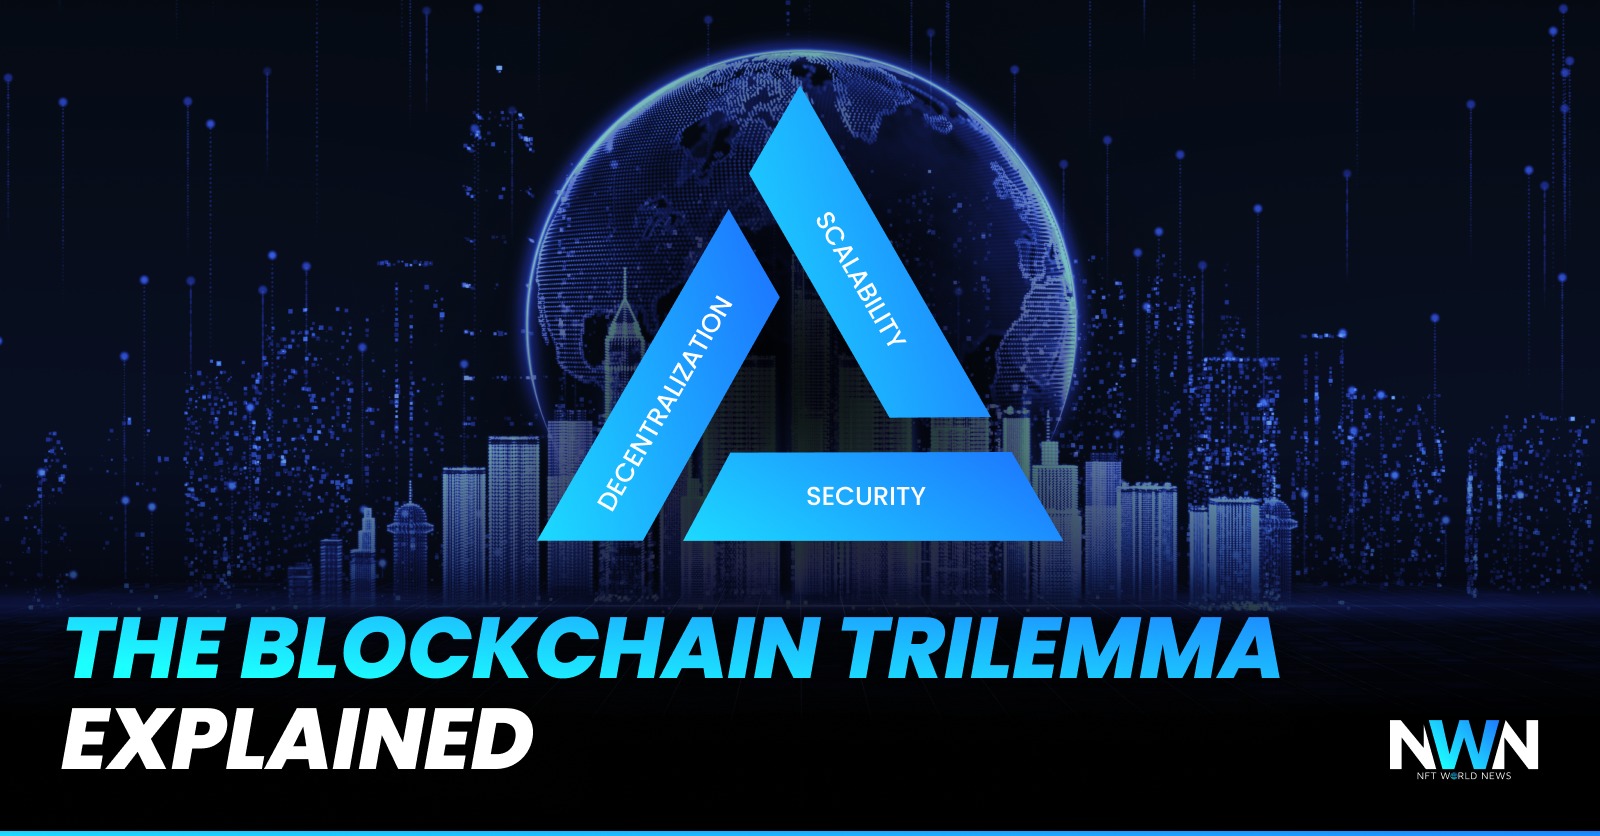 What’s Blockchain Trilemma?